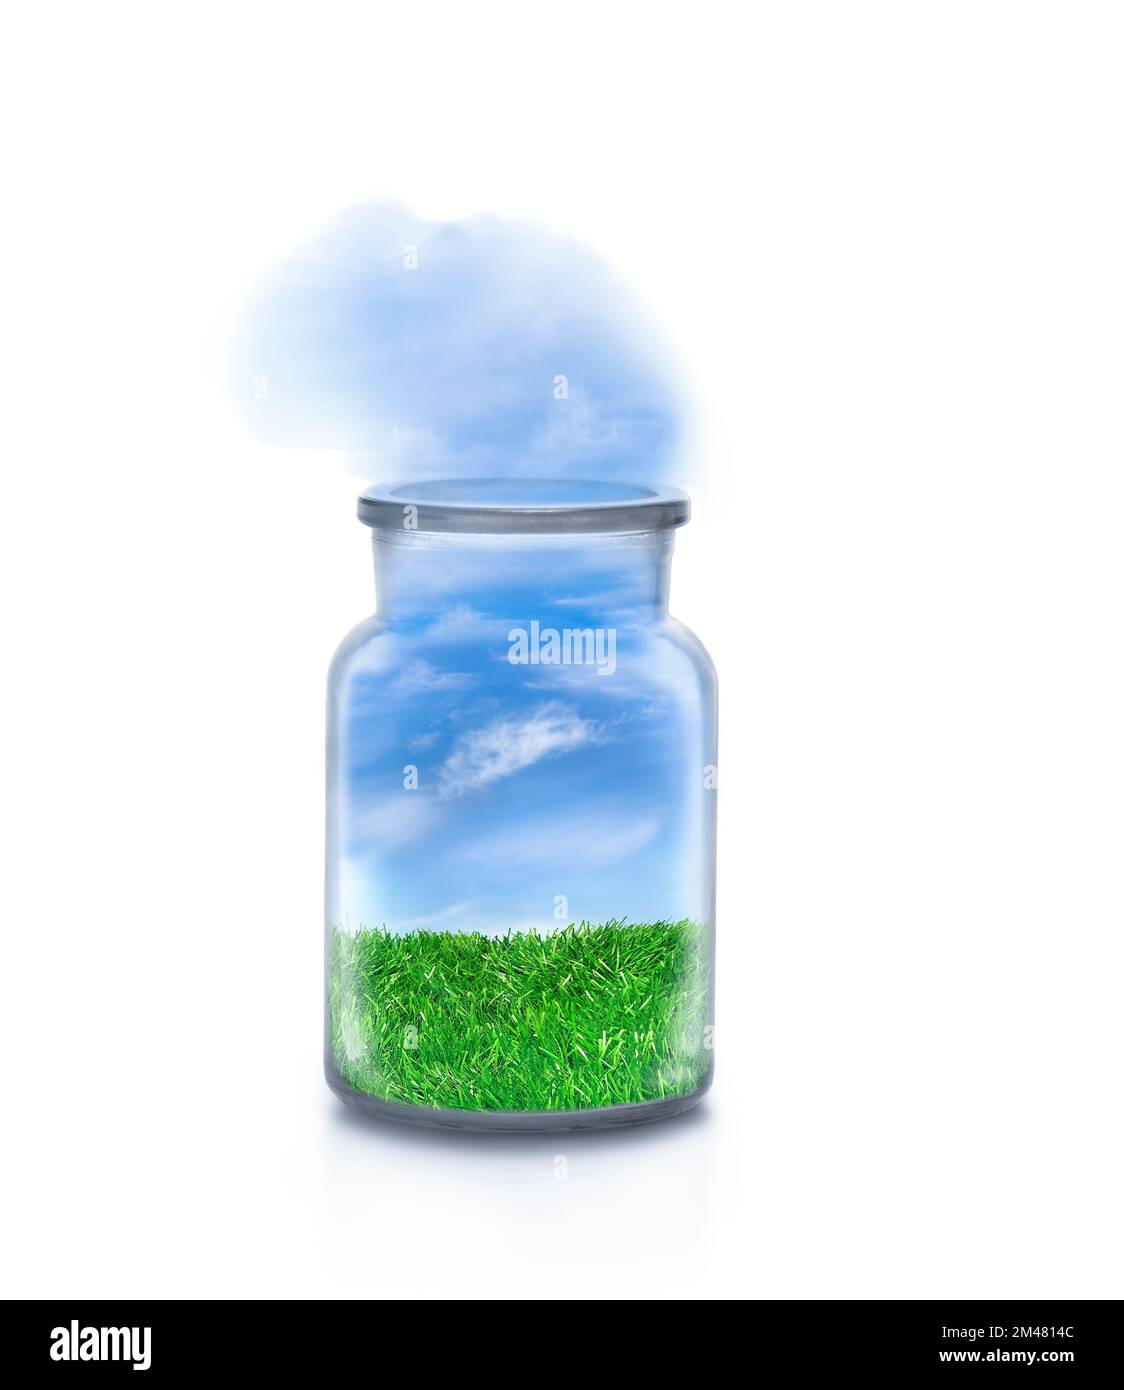 Landschaft mit Gras in einer Chemikalienflasche auf weißem Hintergrund. Freundlicher Himmel, der draußen fließt. Komisches ökologisches und nachhaltiges Konzept. Stockfoto